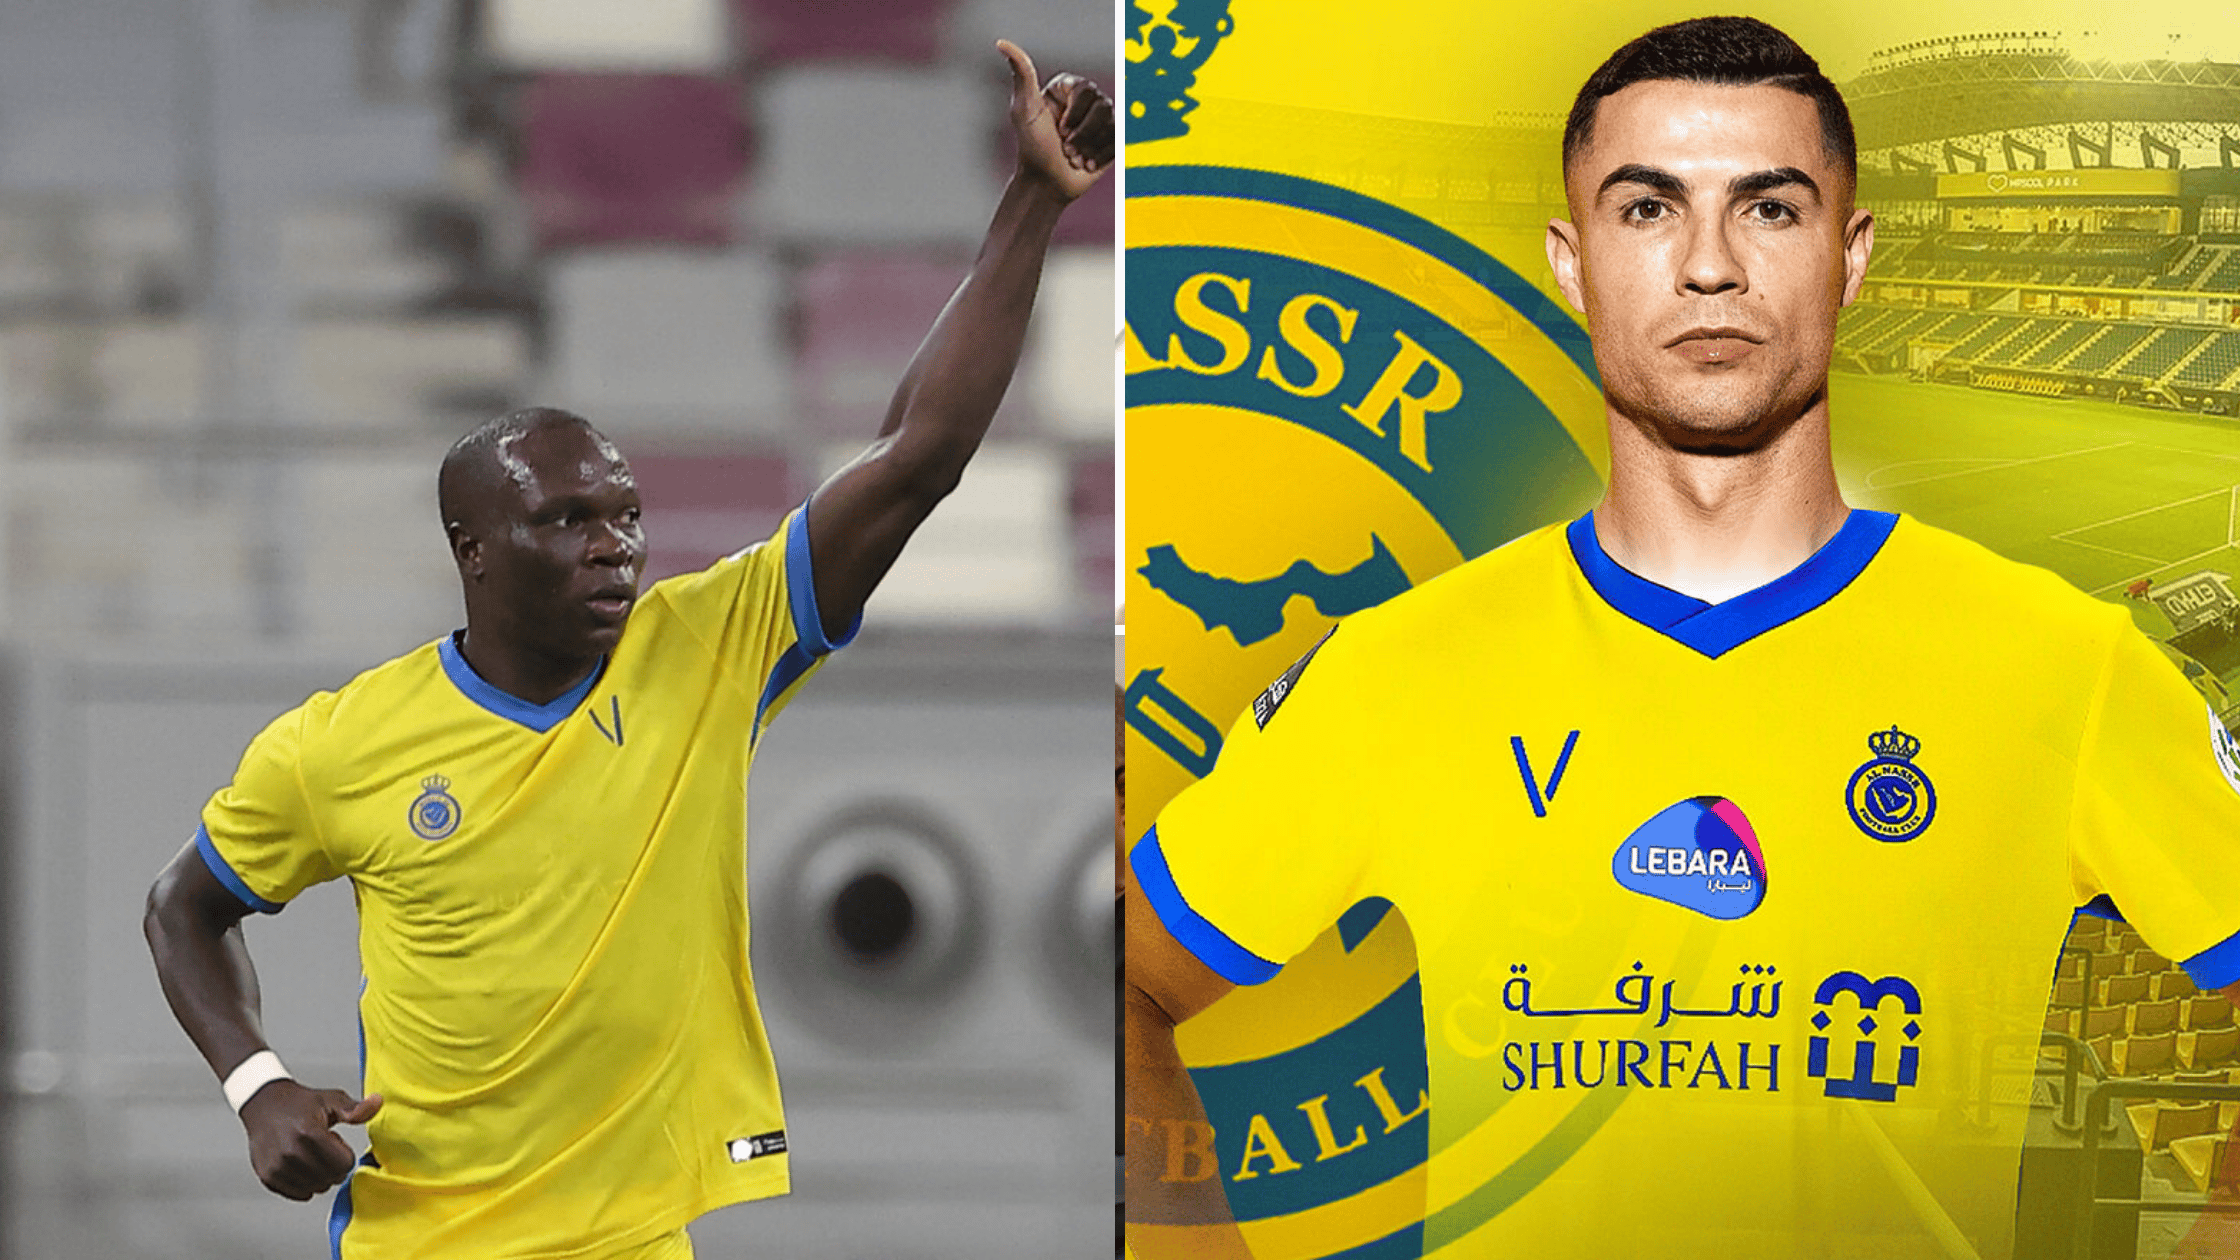 EPL Transfer: Man United Moves To Sign Ronaldo's Teammate, Aboubakar From Al-Nassr